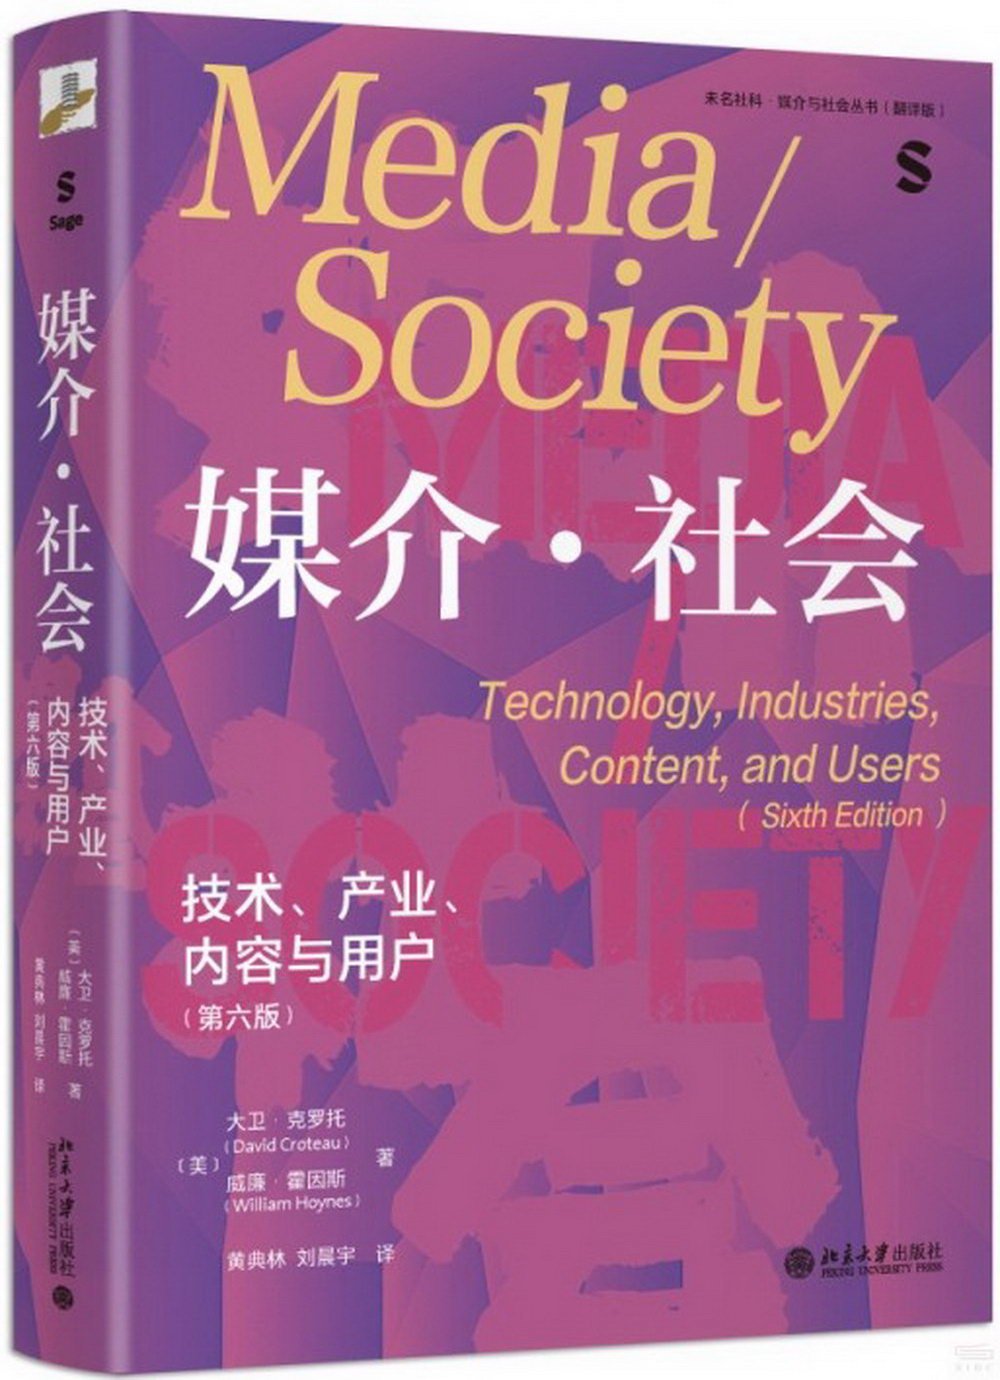 媒介·社會:技術、產業、內容與用戶(第6版)